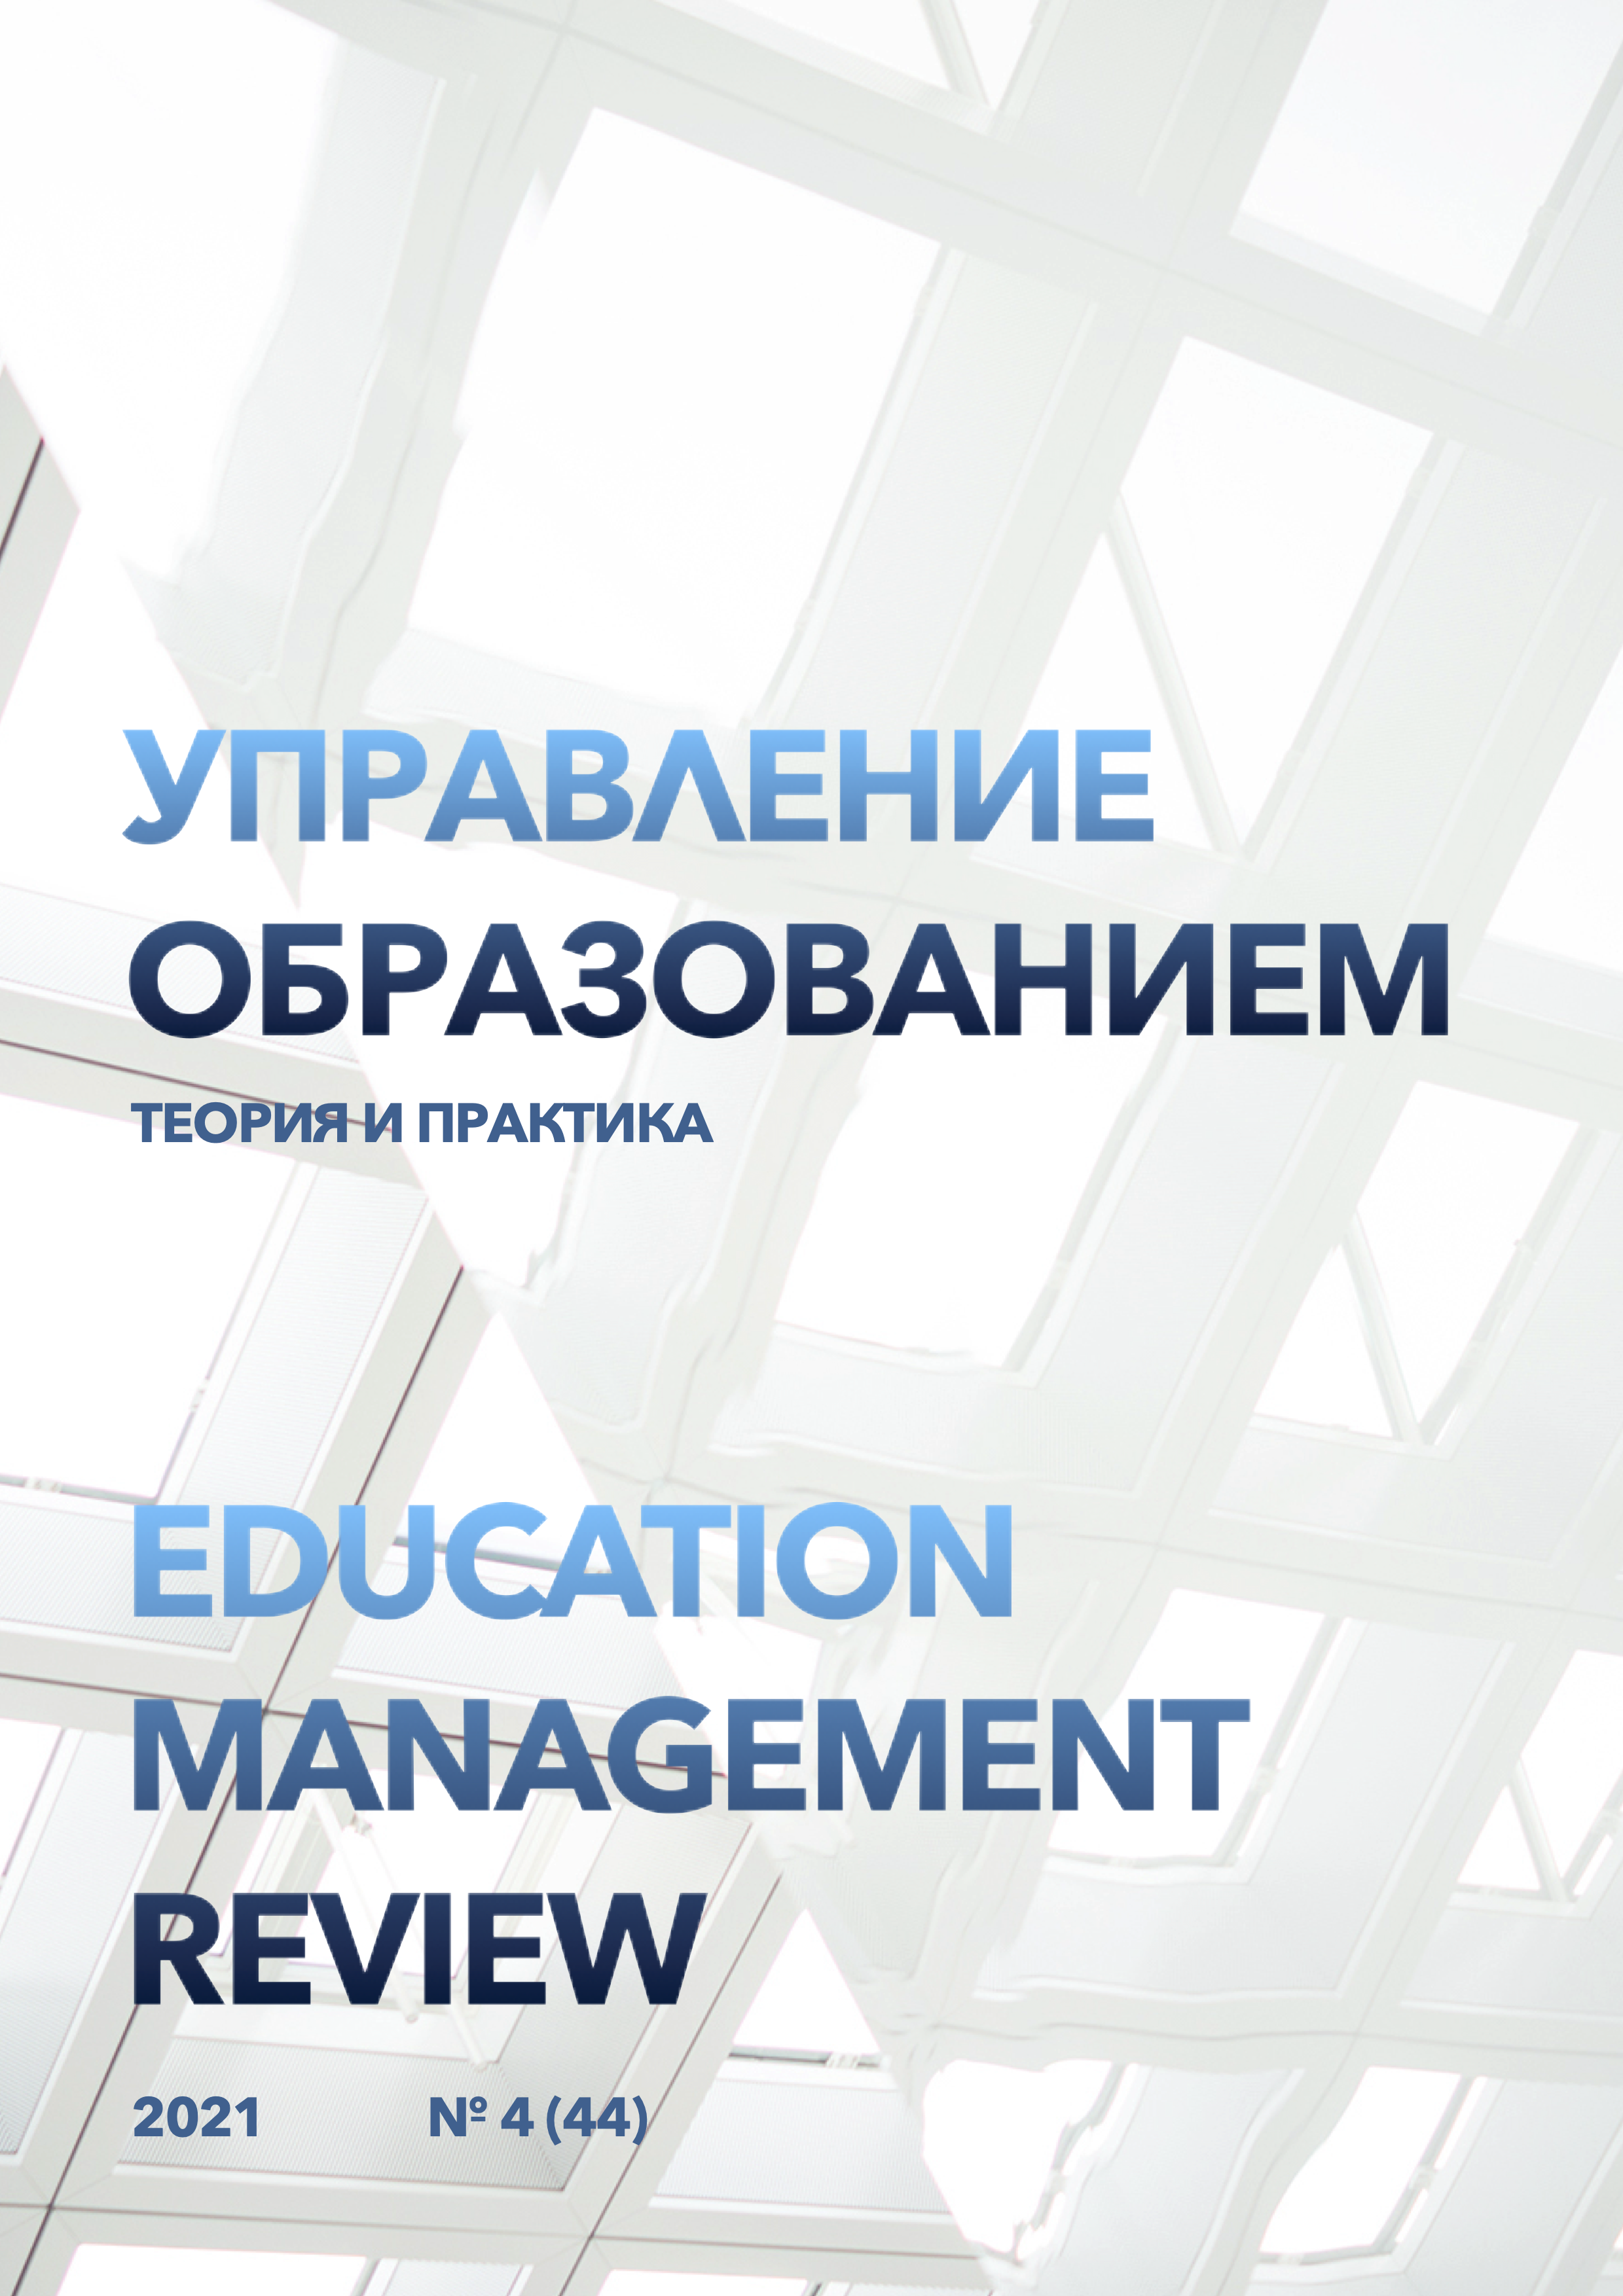 					View Vol. 11 No. 4 (2021): Education management review, №4 (44), 2021
				